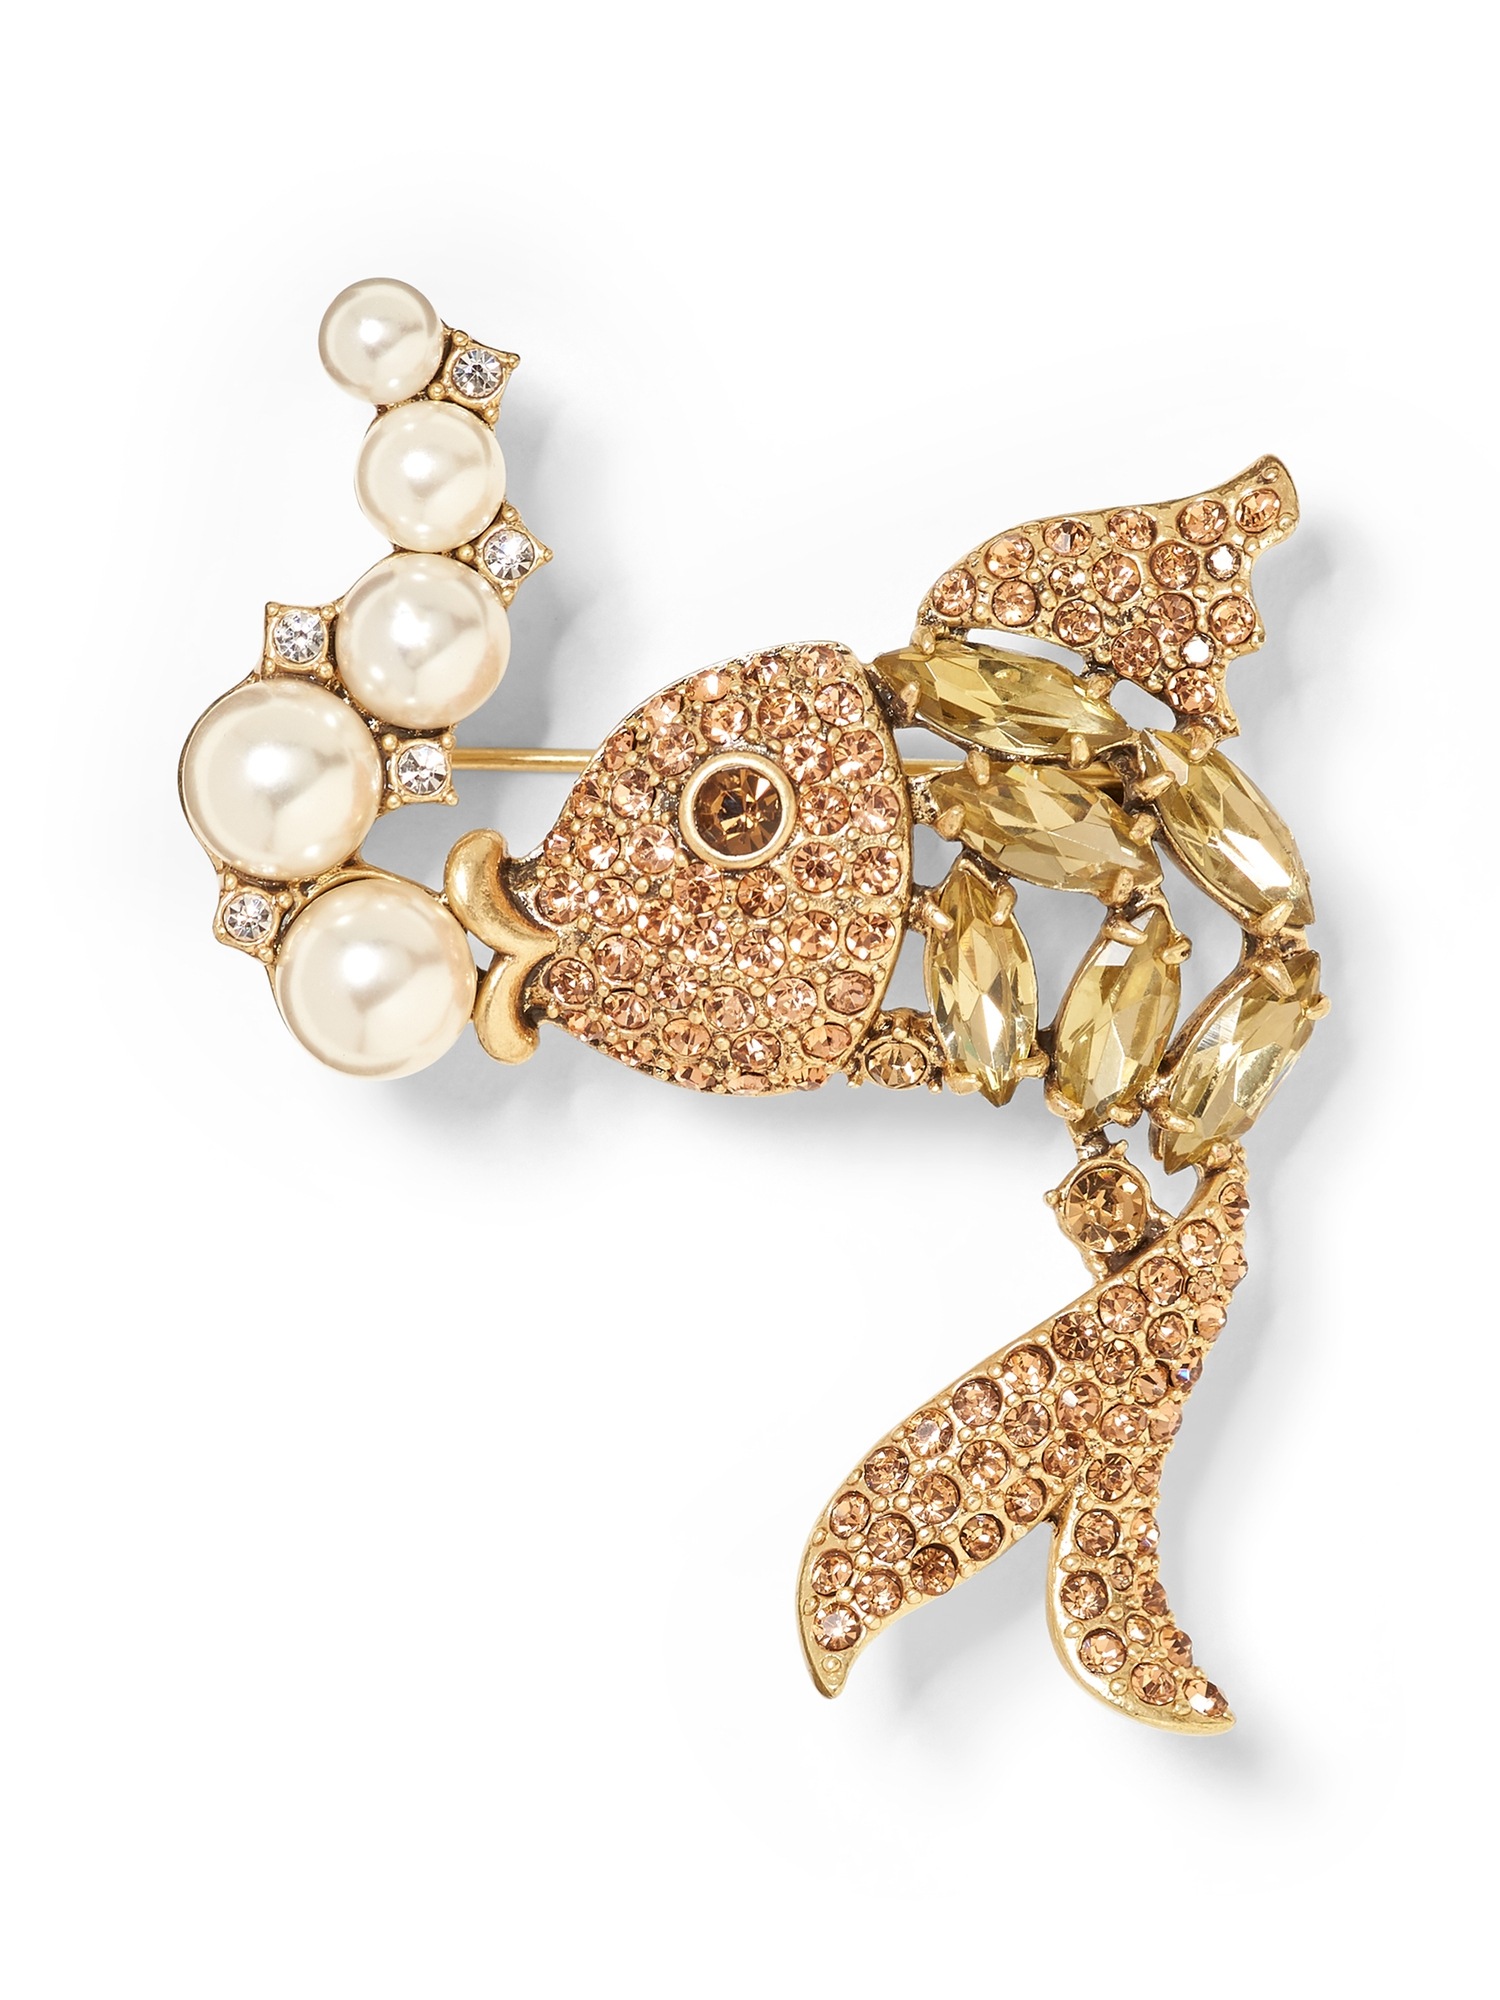 Jeweled Fish Brooch